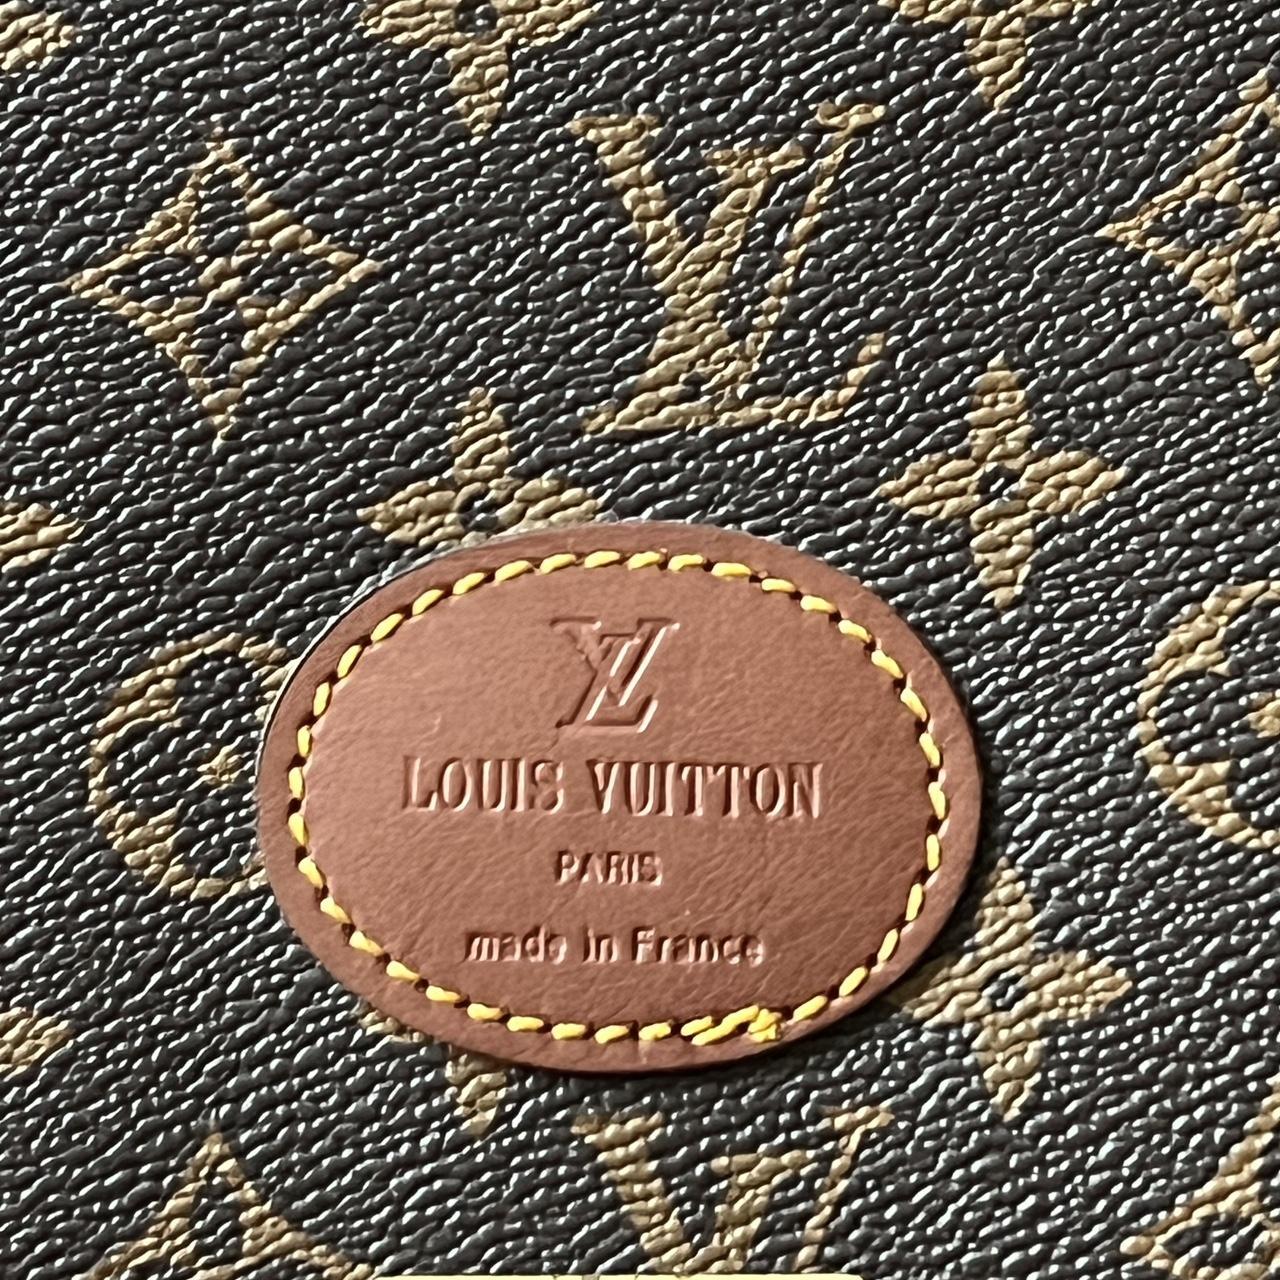 Louis Vuitton AUTHENTIC Vintage briefcase/computer - Depop